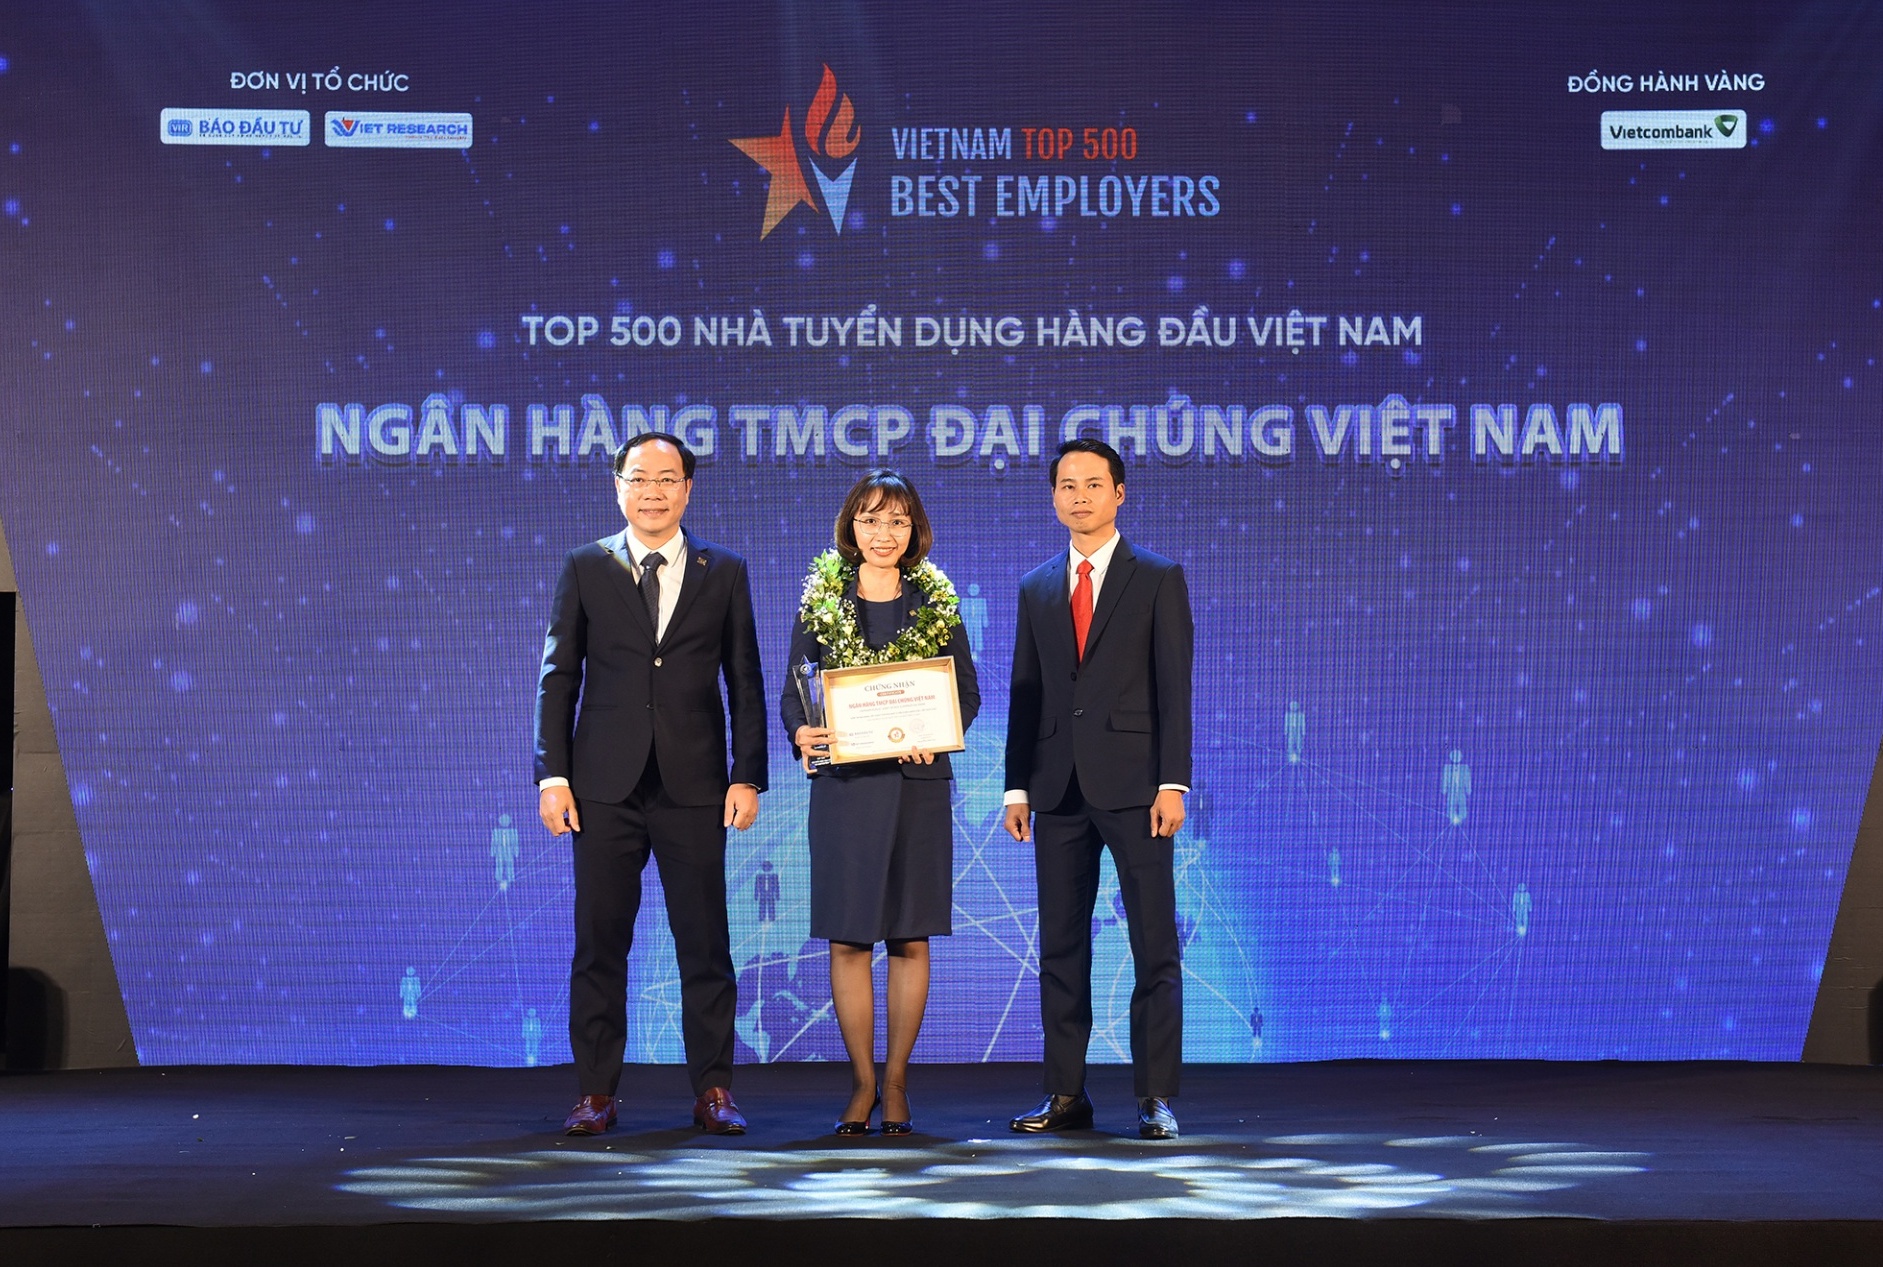 PVcomBank được vinh danh trong Top 500 Nhà tuyển dụng hàng đầu Việt Nam 2022